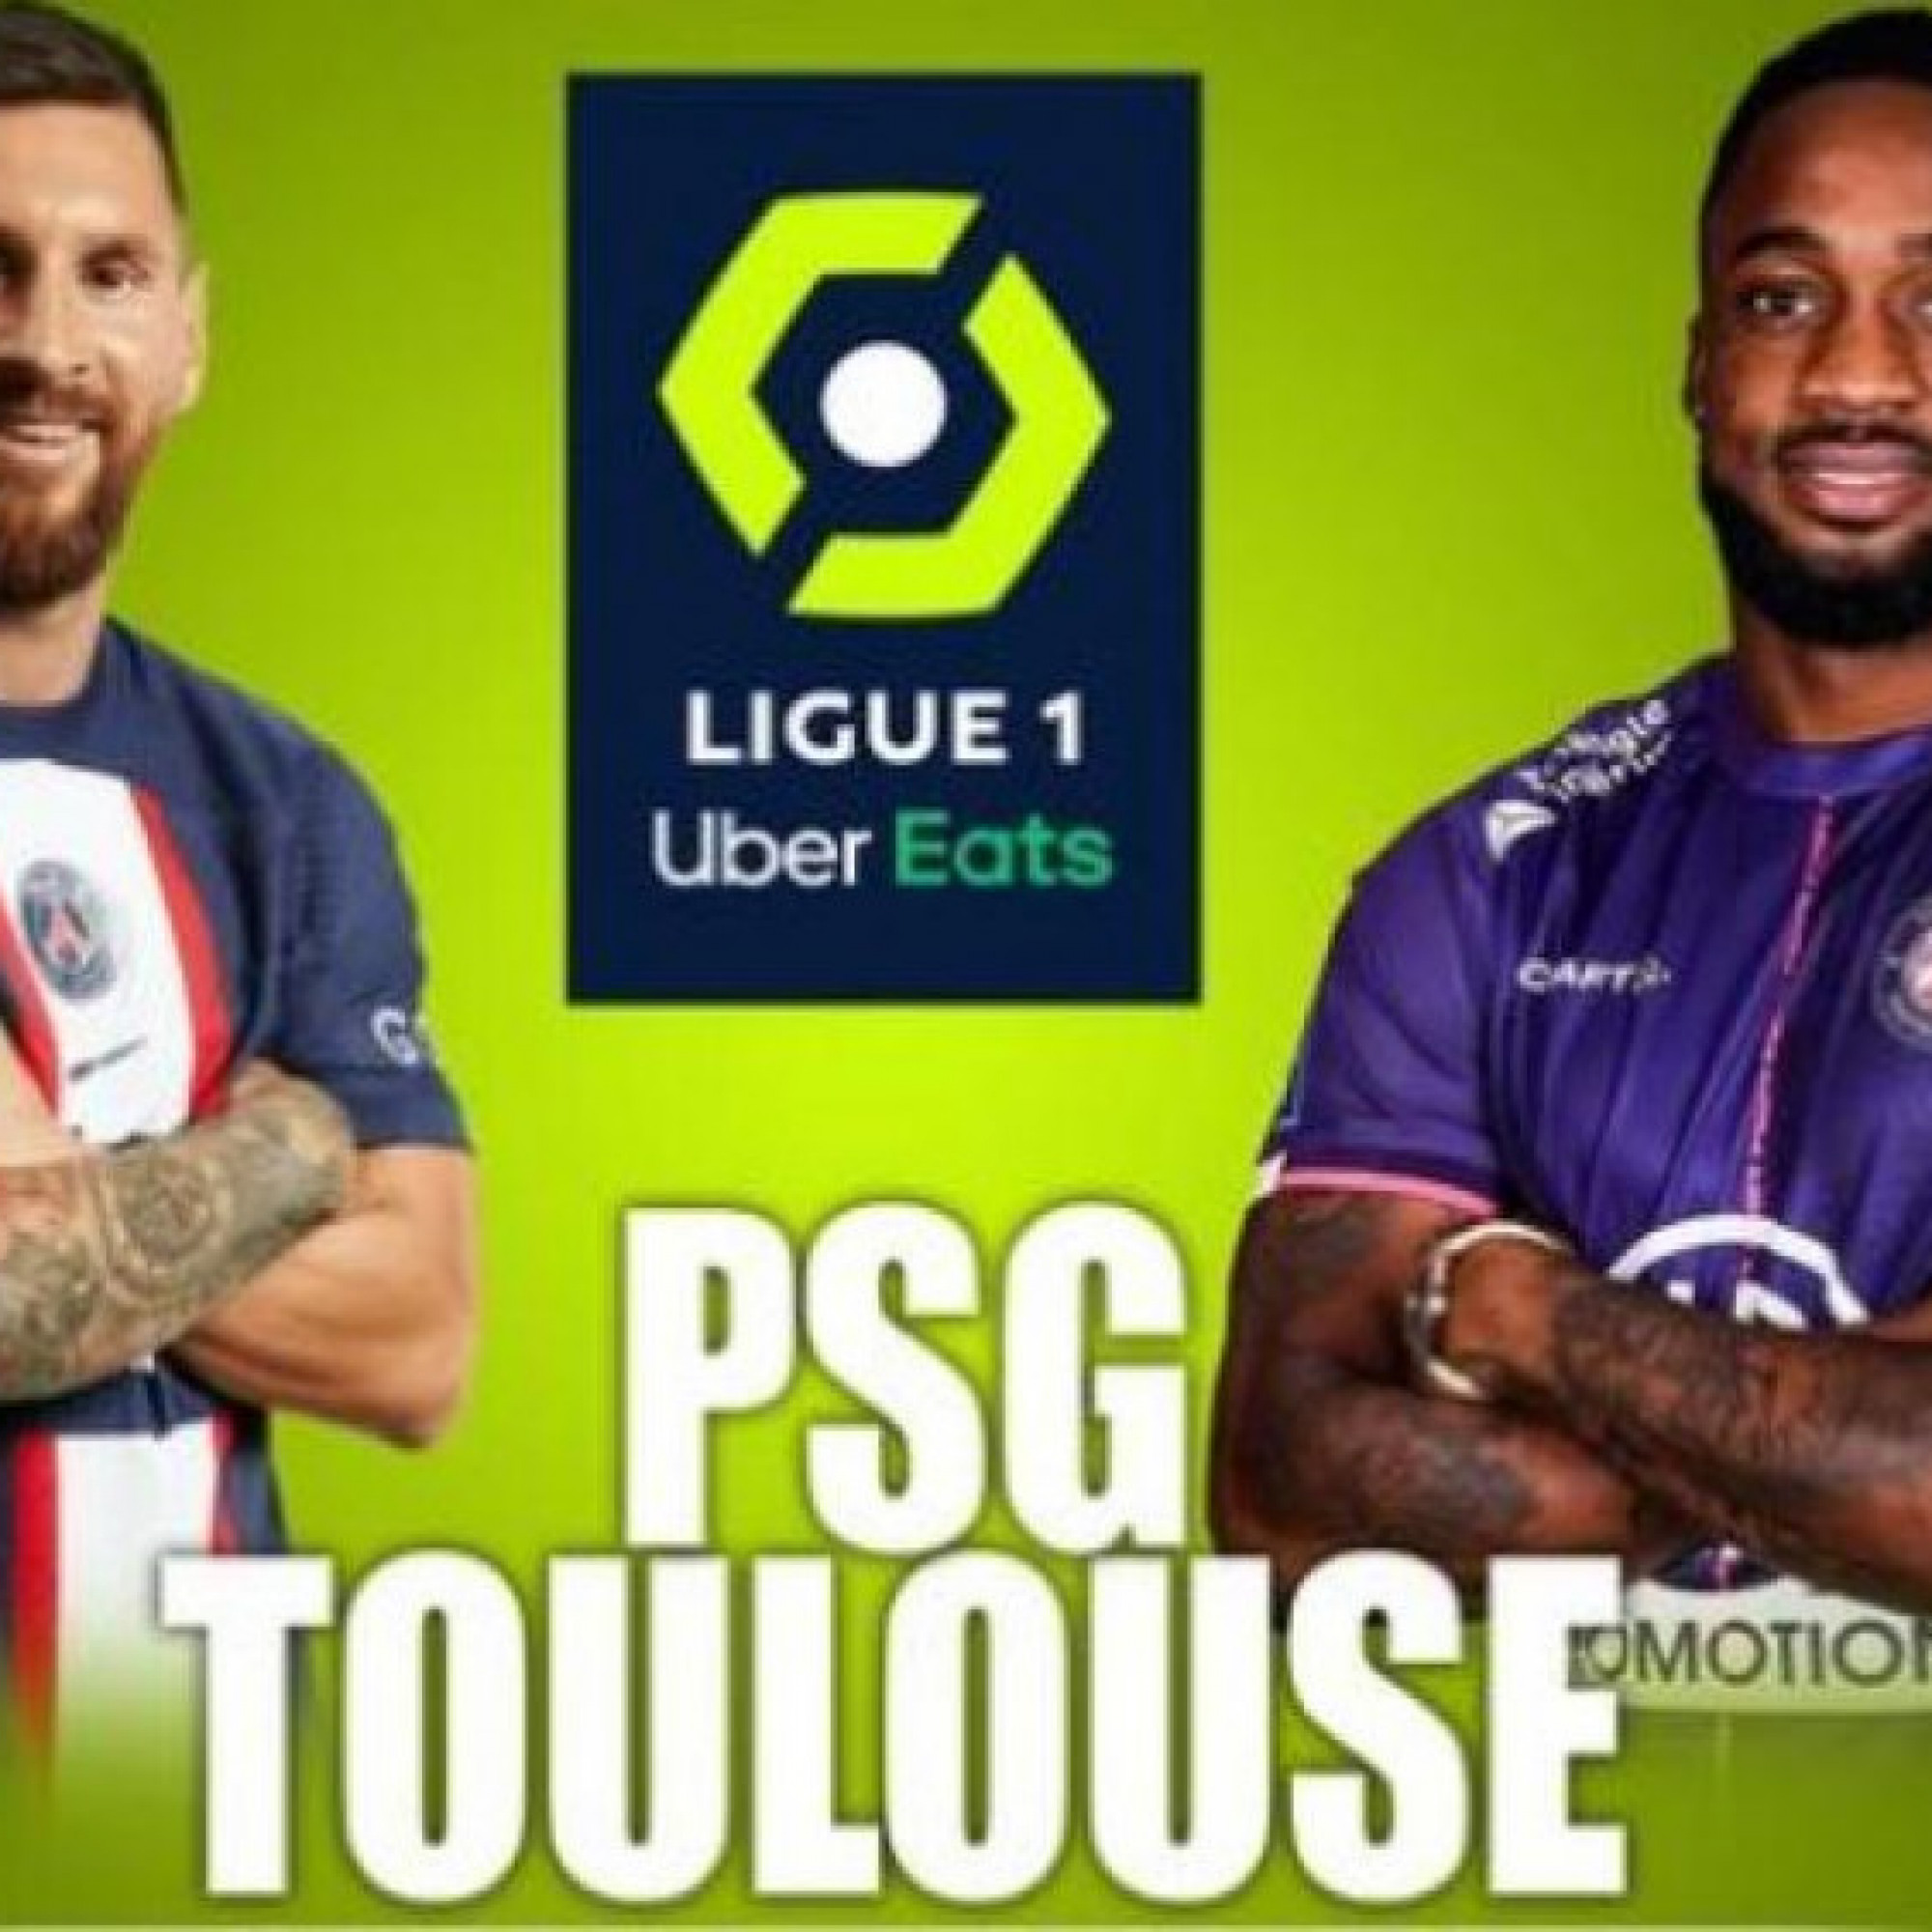  - Trực tiếp bóng đá PSG - Toulouse: Thế trận diễn ra hấp dẫn (Ligue 1)